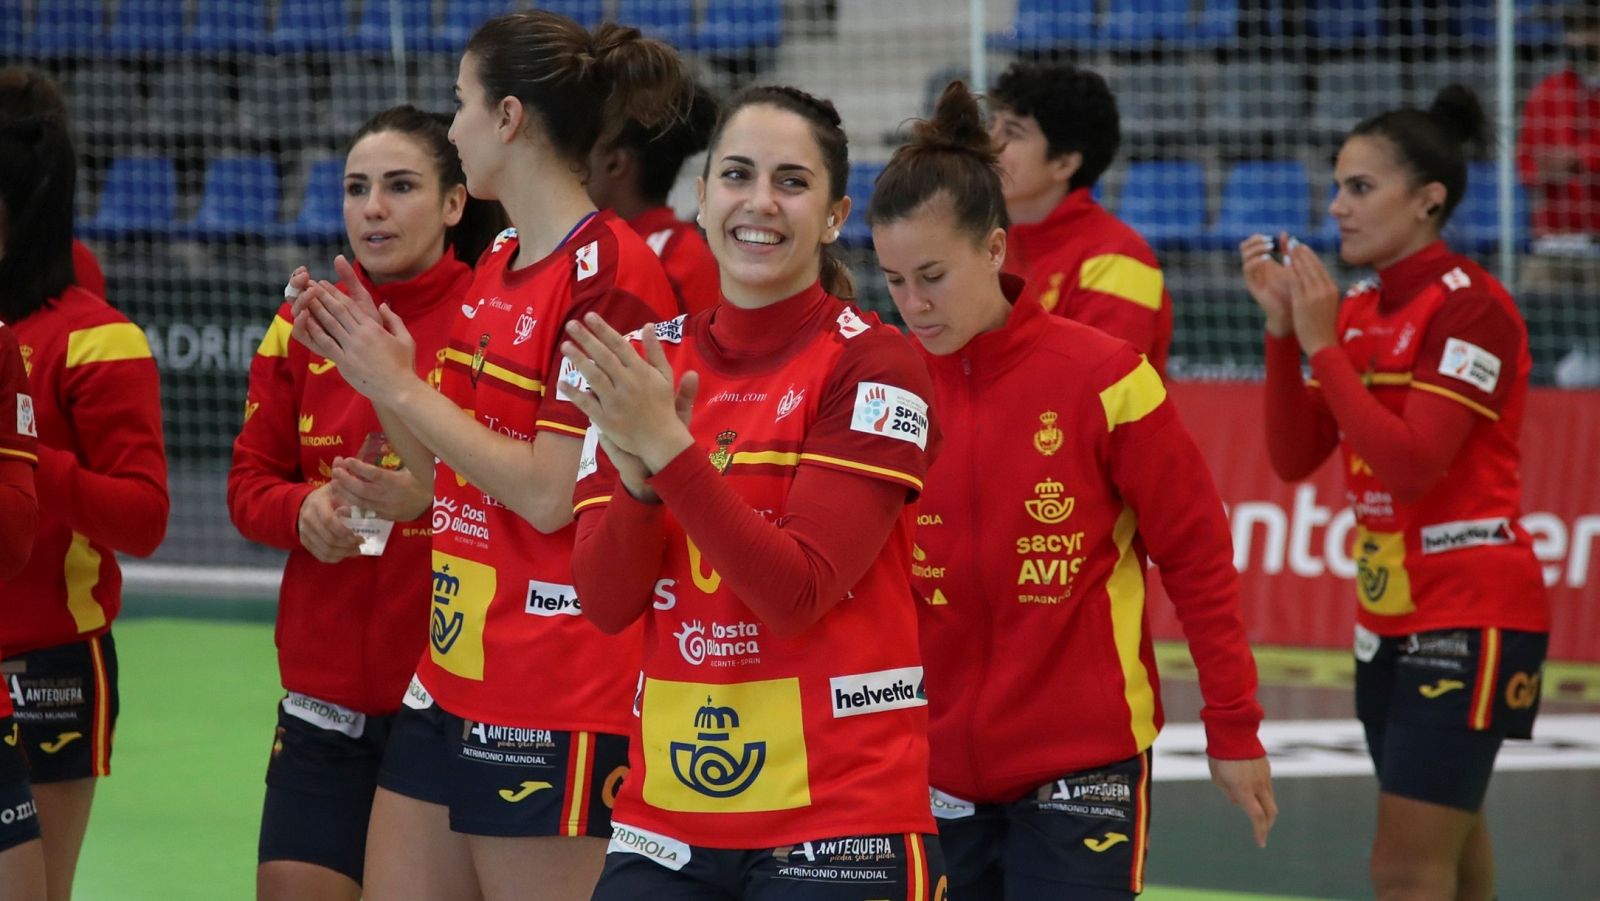 Las jugadoras de balonmano españolas celebran tras imponerse a Alemania en su partido del torneo internacional de balonmano femenino